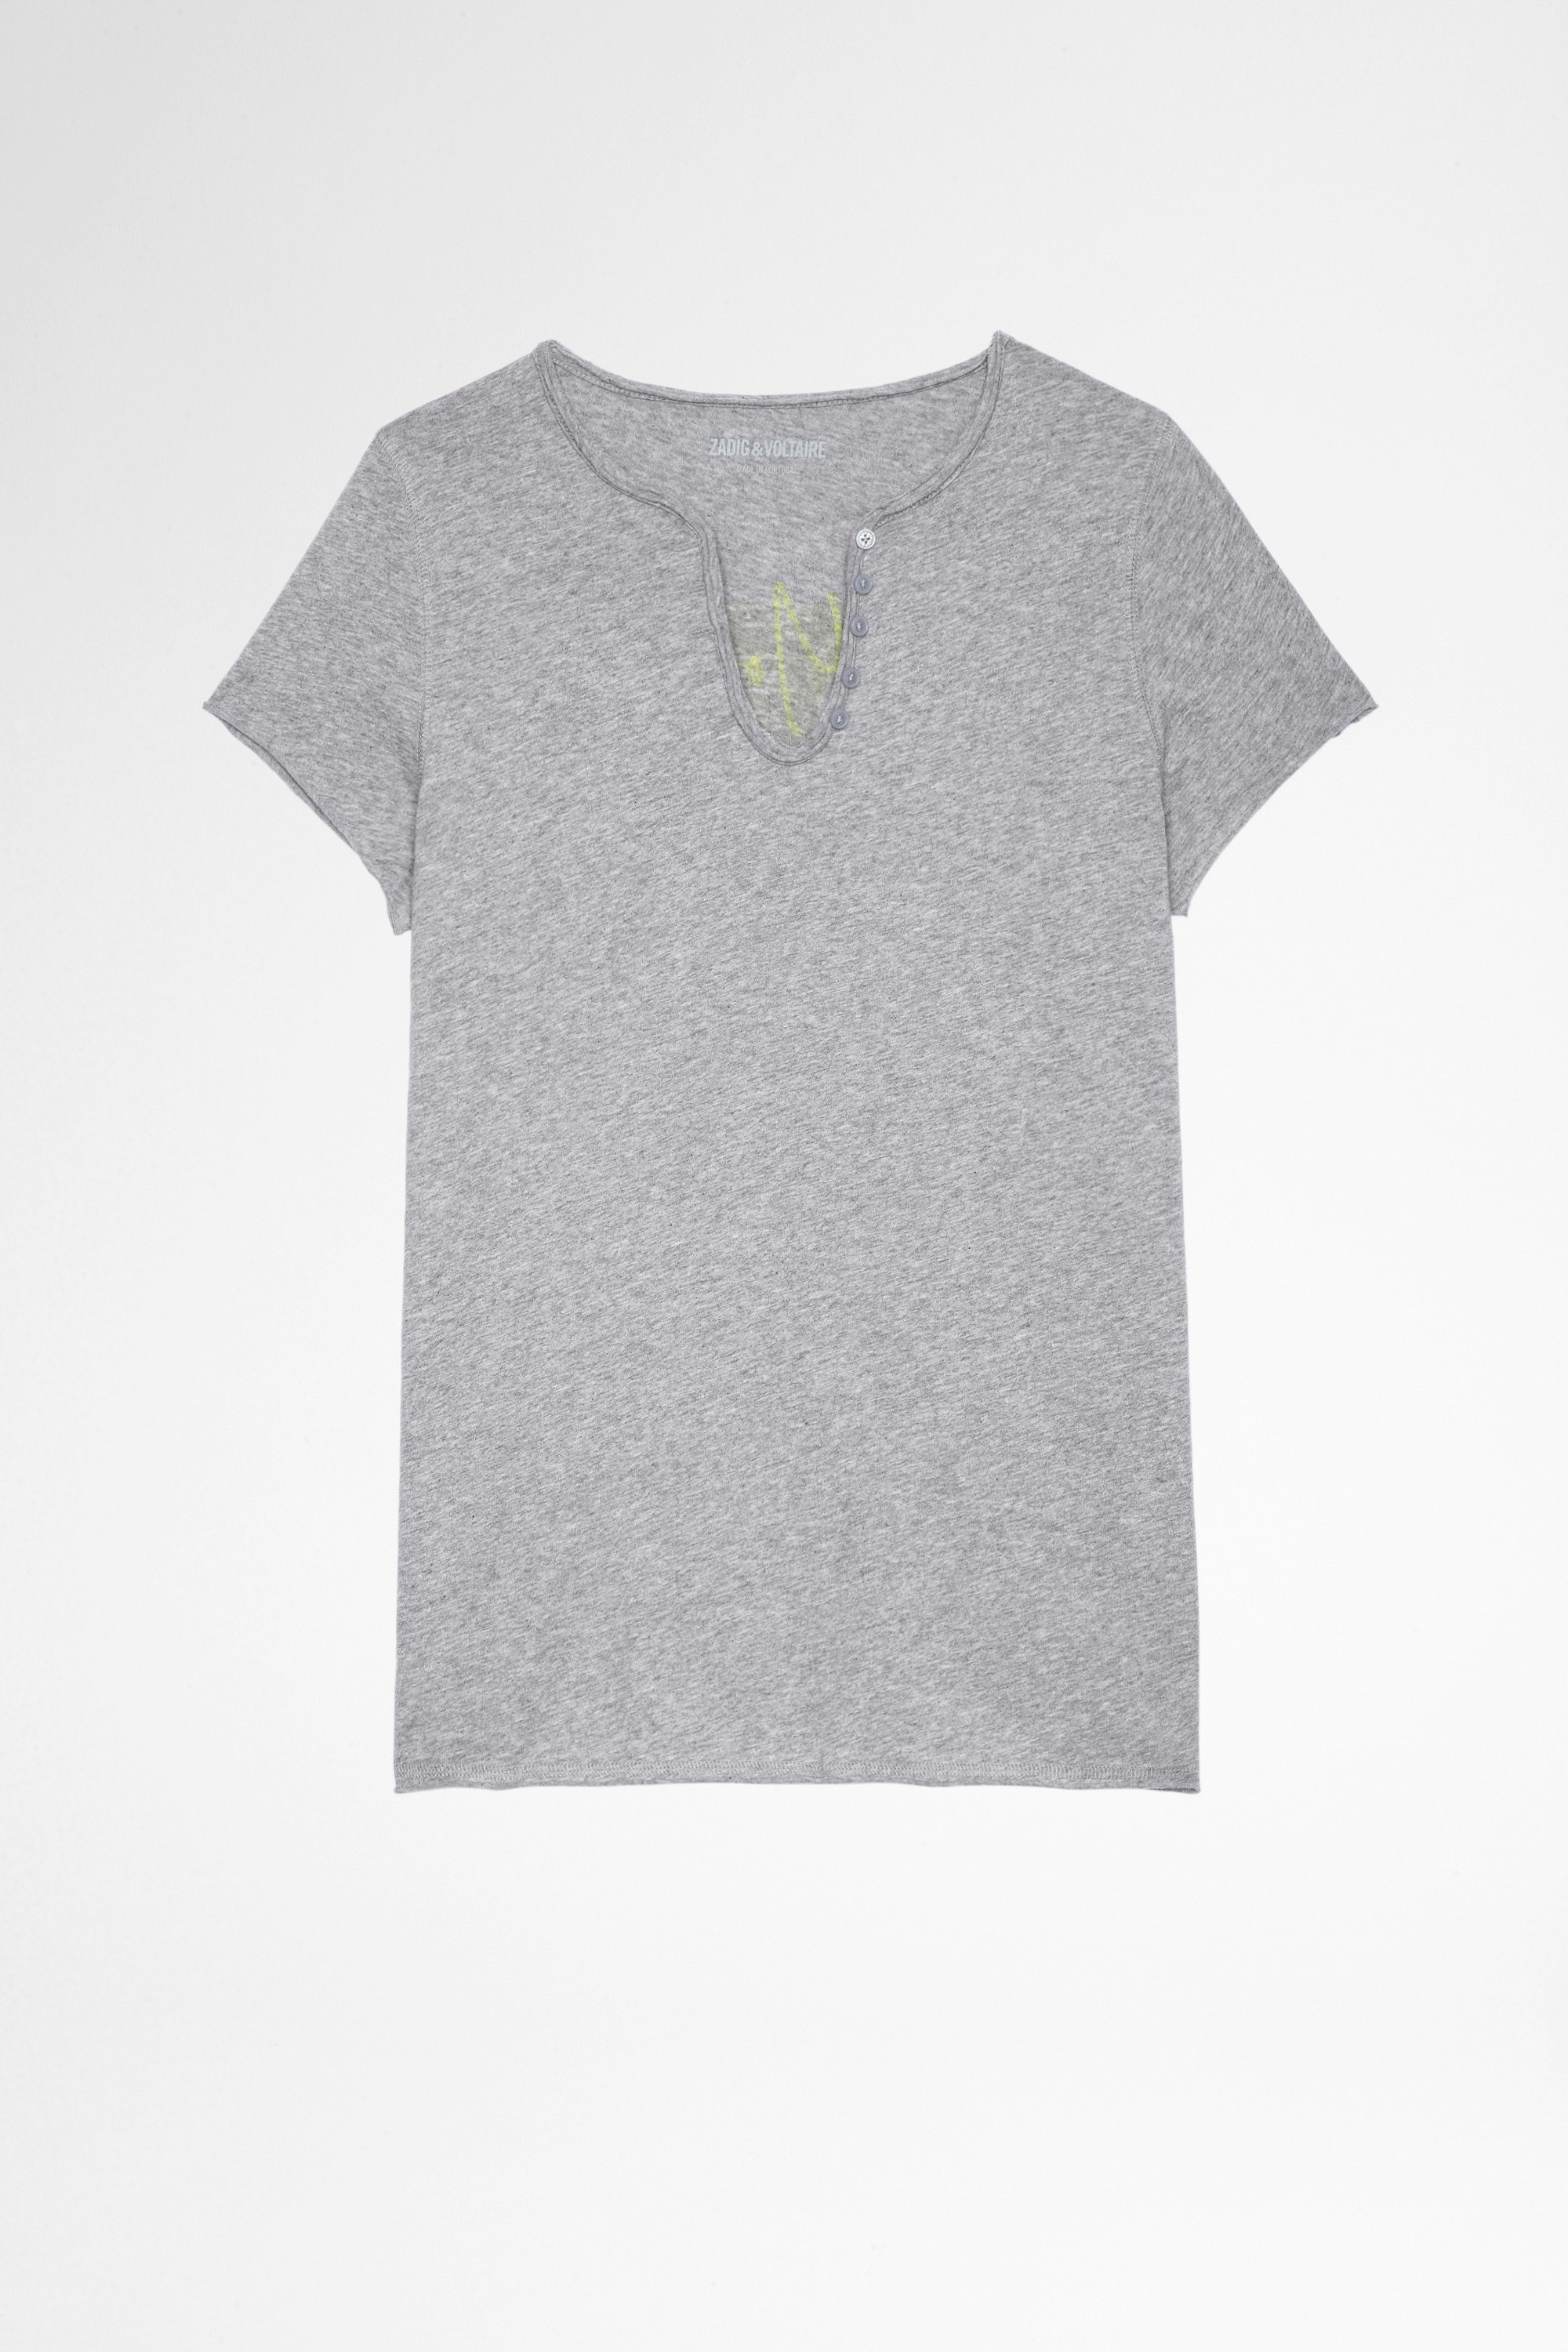 T-shirt mit Henley-Ausschnitt Photoprint Damen-T-shirt mit Henley-Ausschnitt aus grauer Baumwolle, mit Fotoprint hinten. Hergestellt mit Fasern aus biologischem Anbau